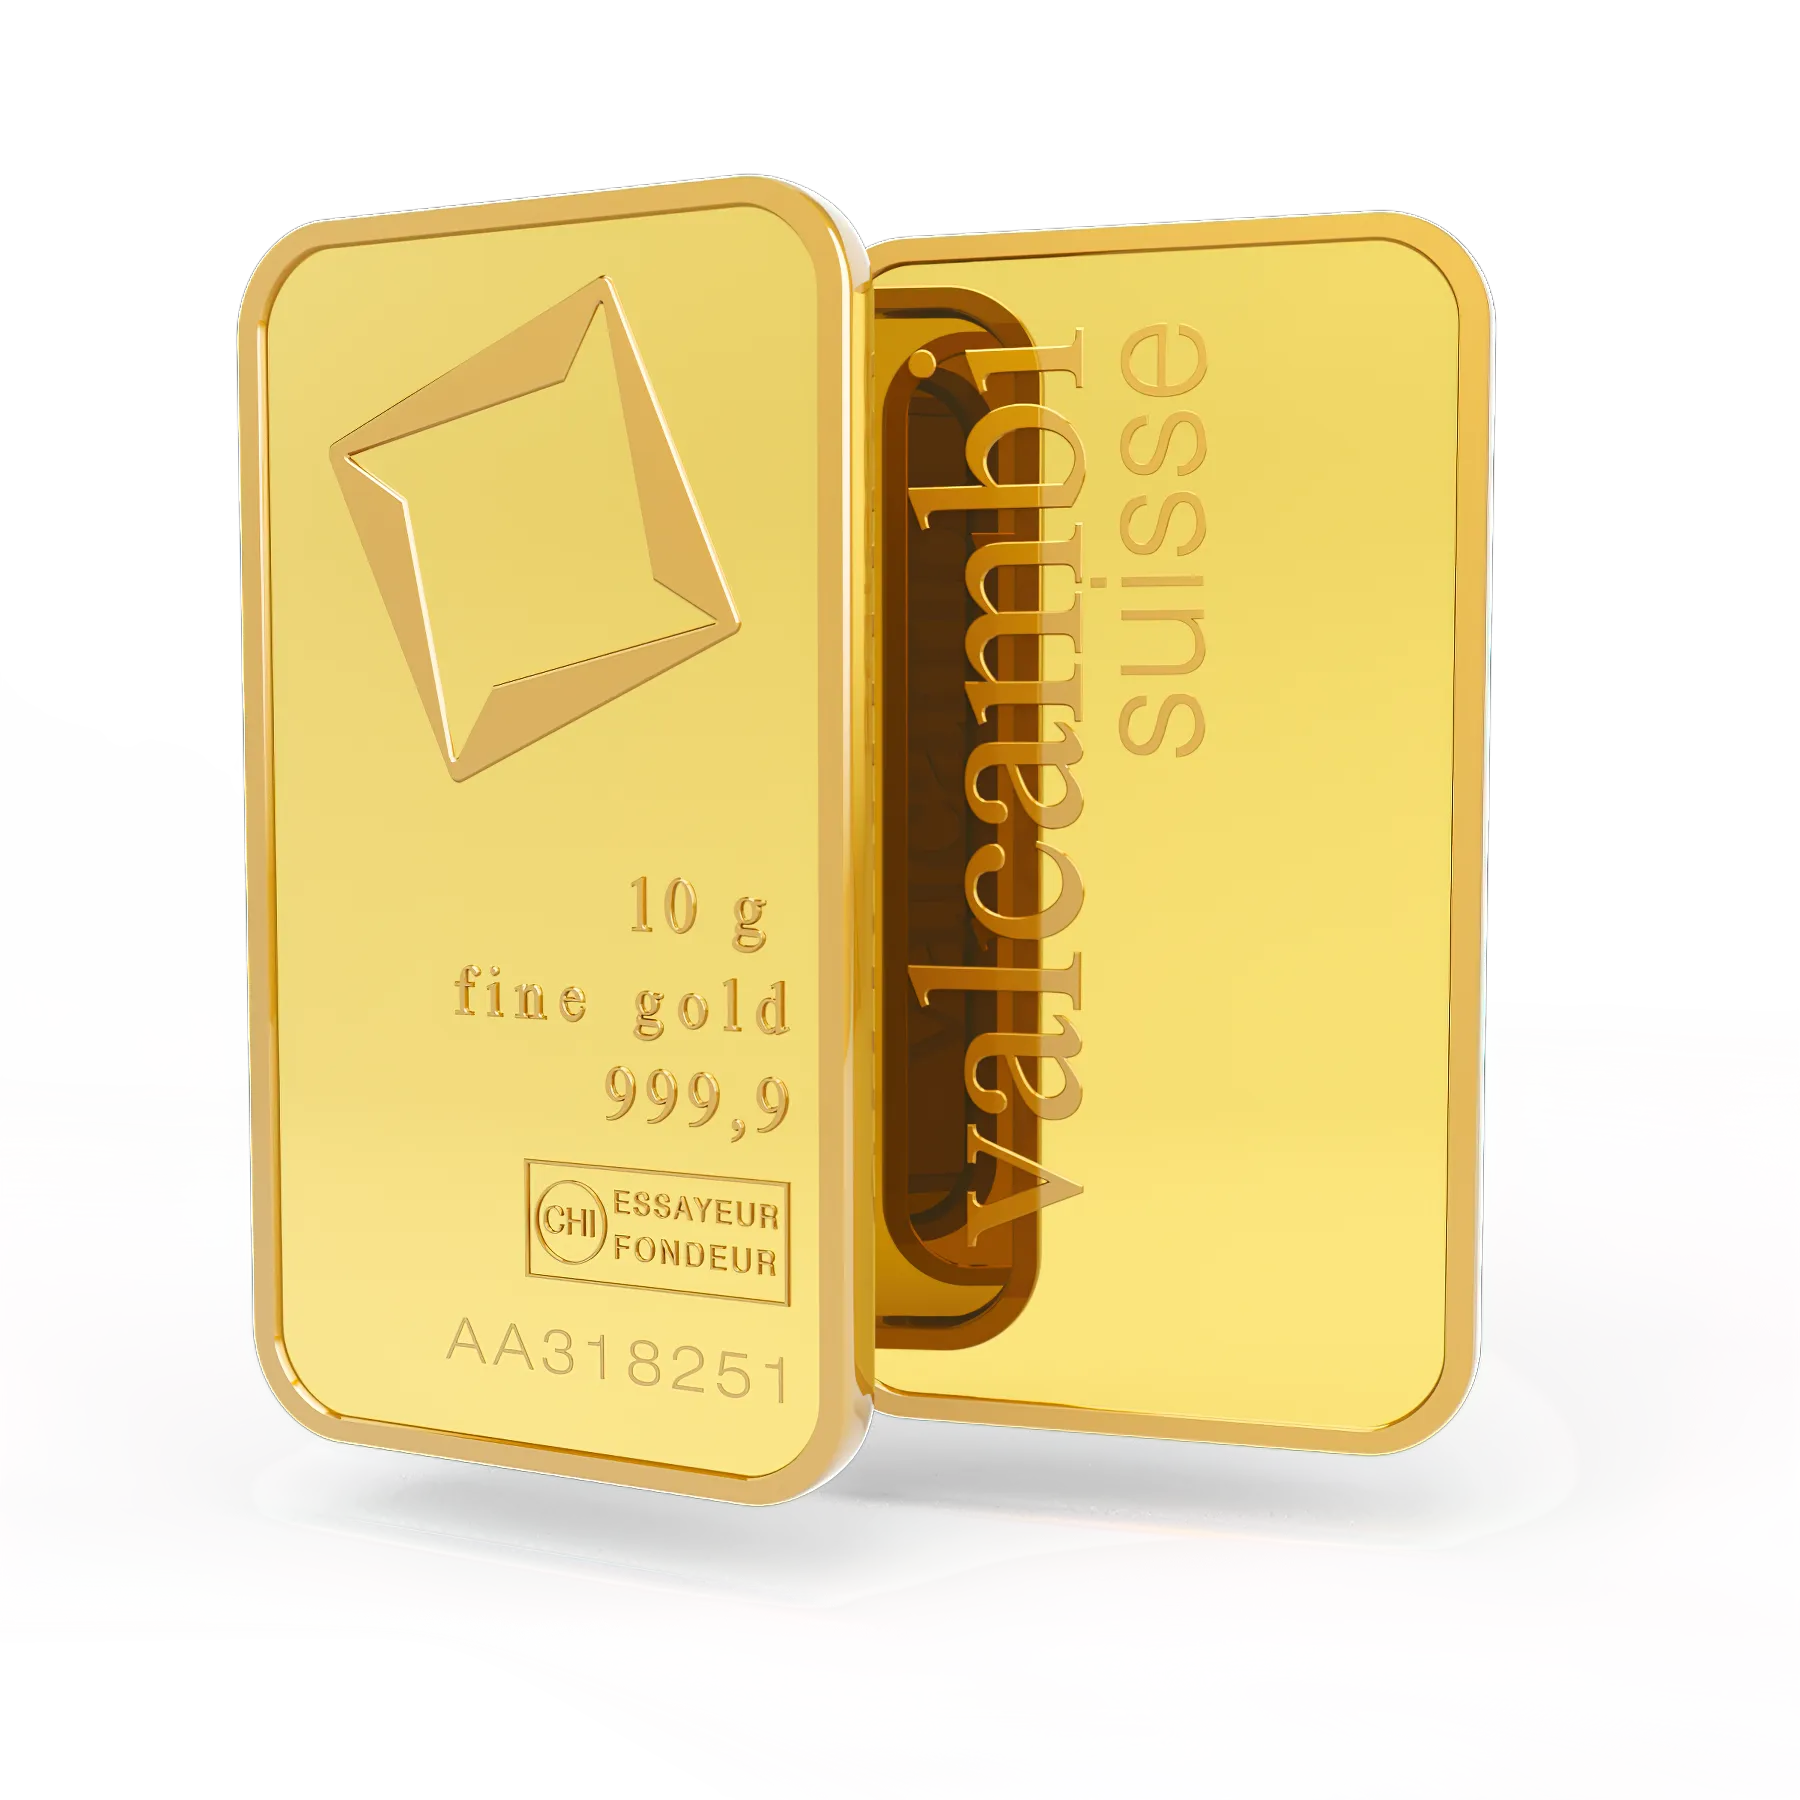 10g gold bar. Switzerland. Fine Gold. 999.9